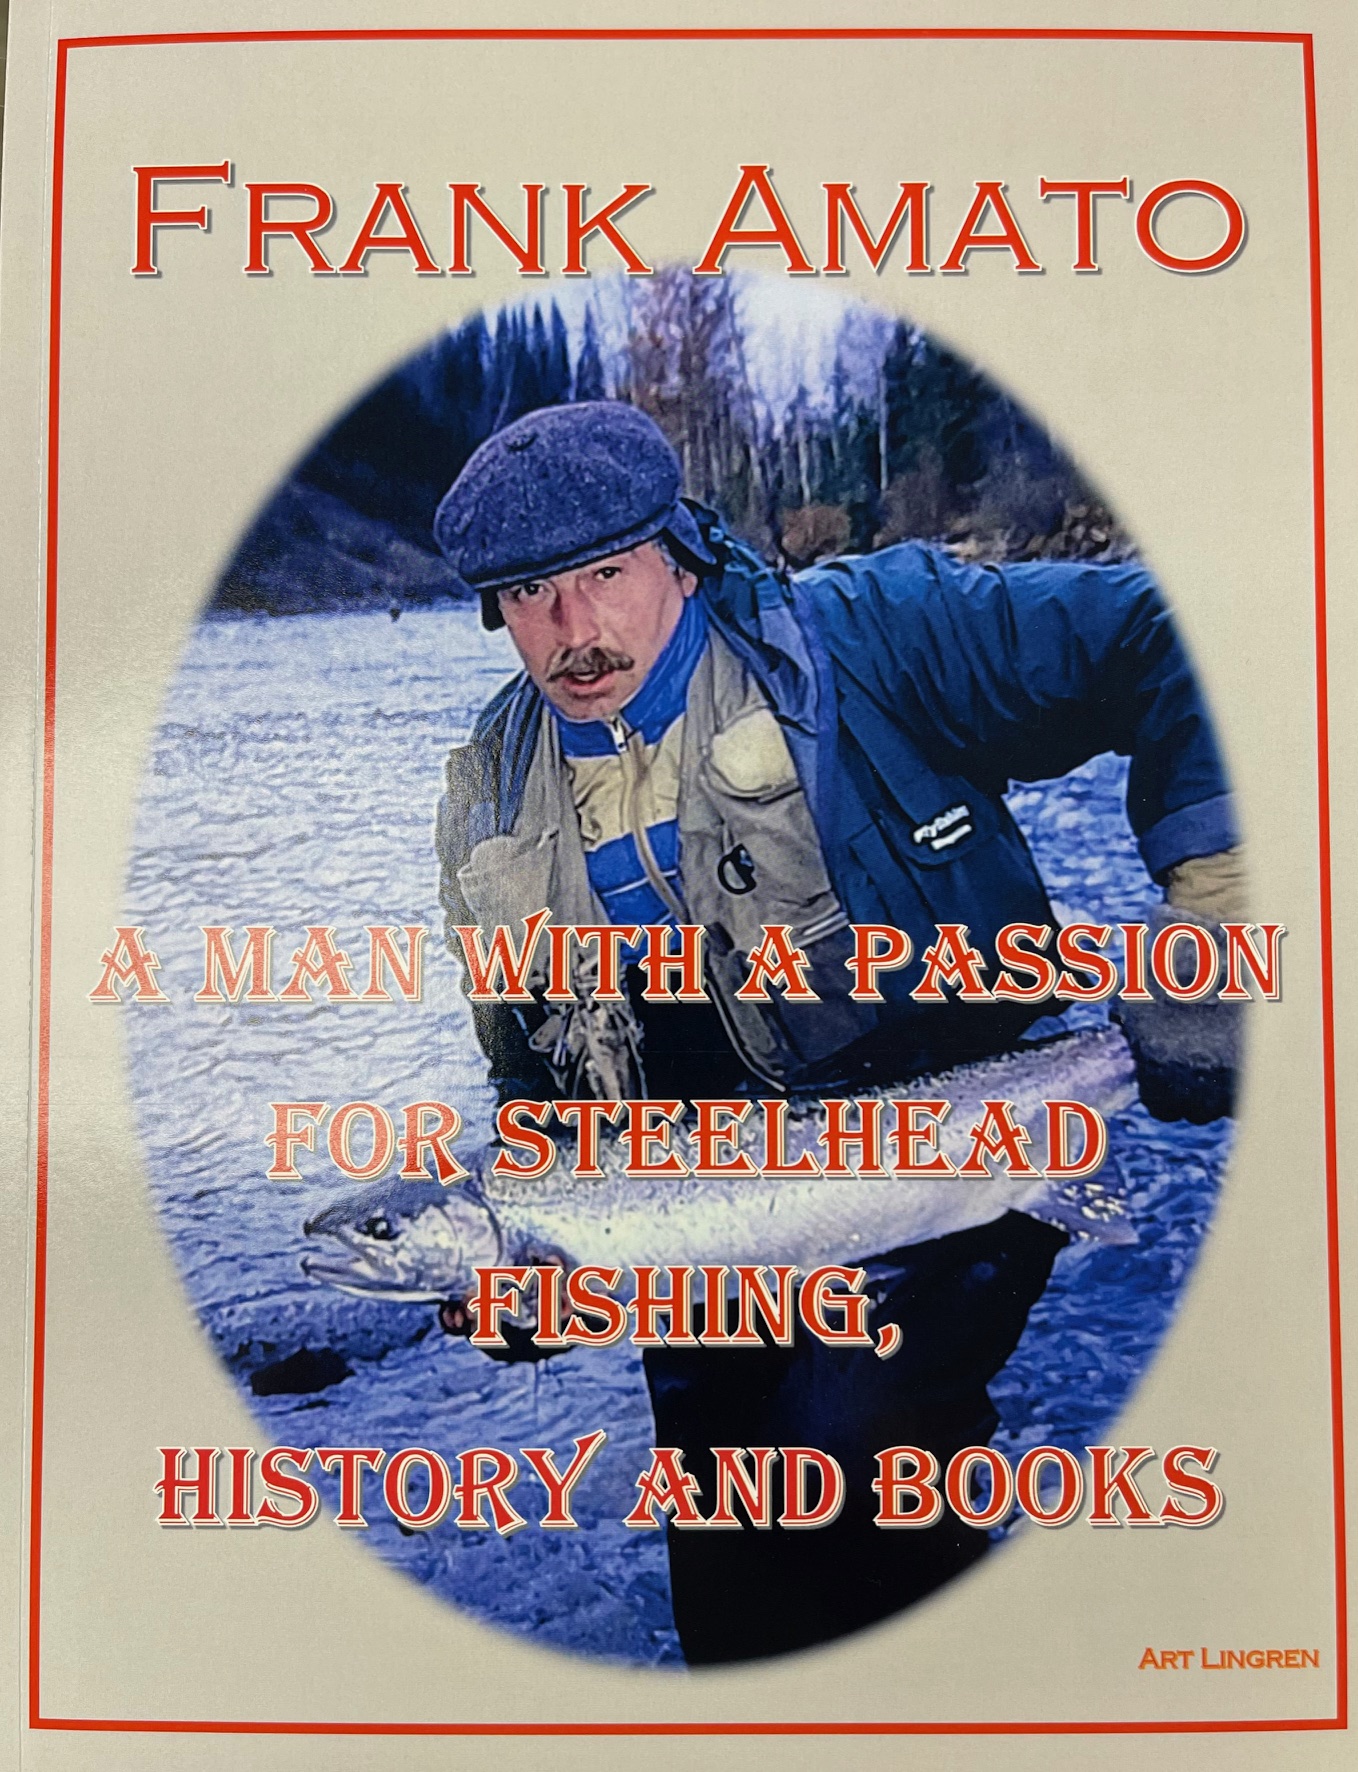 Frank Amato